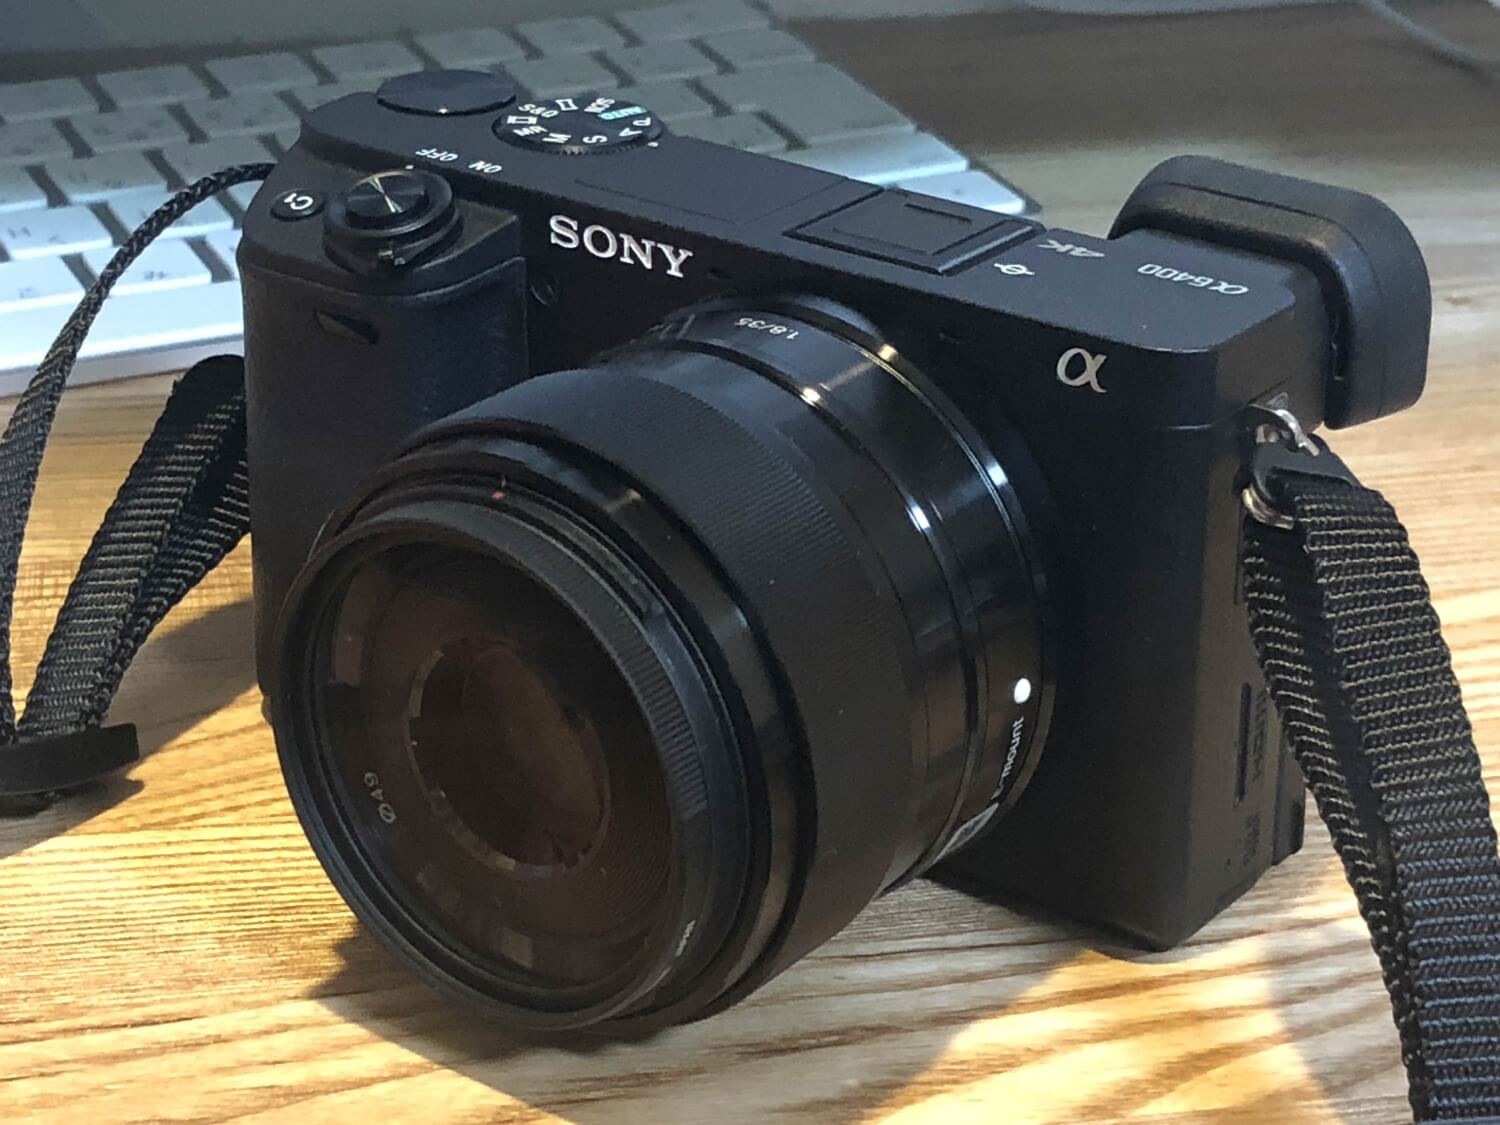 売れ済オンライン SEL35F18　SONY Eマウント単焦点レンズ E 35mm F1.8 レンズ(単焦点)